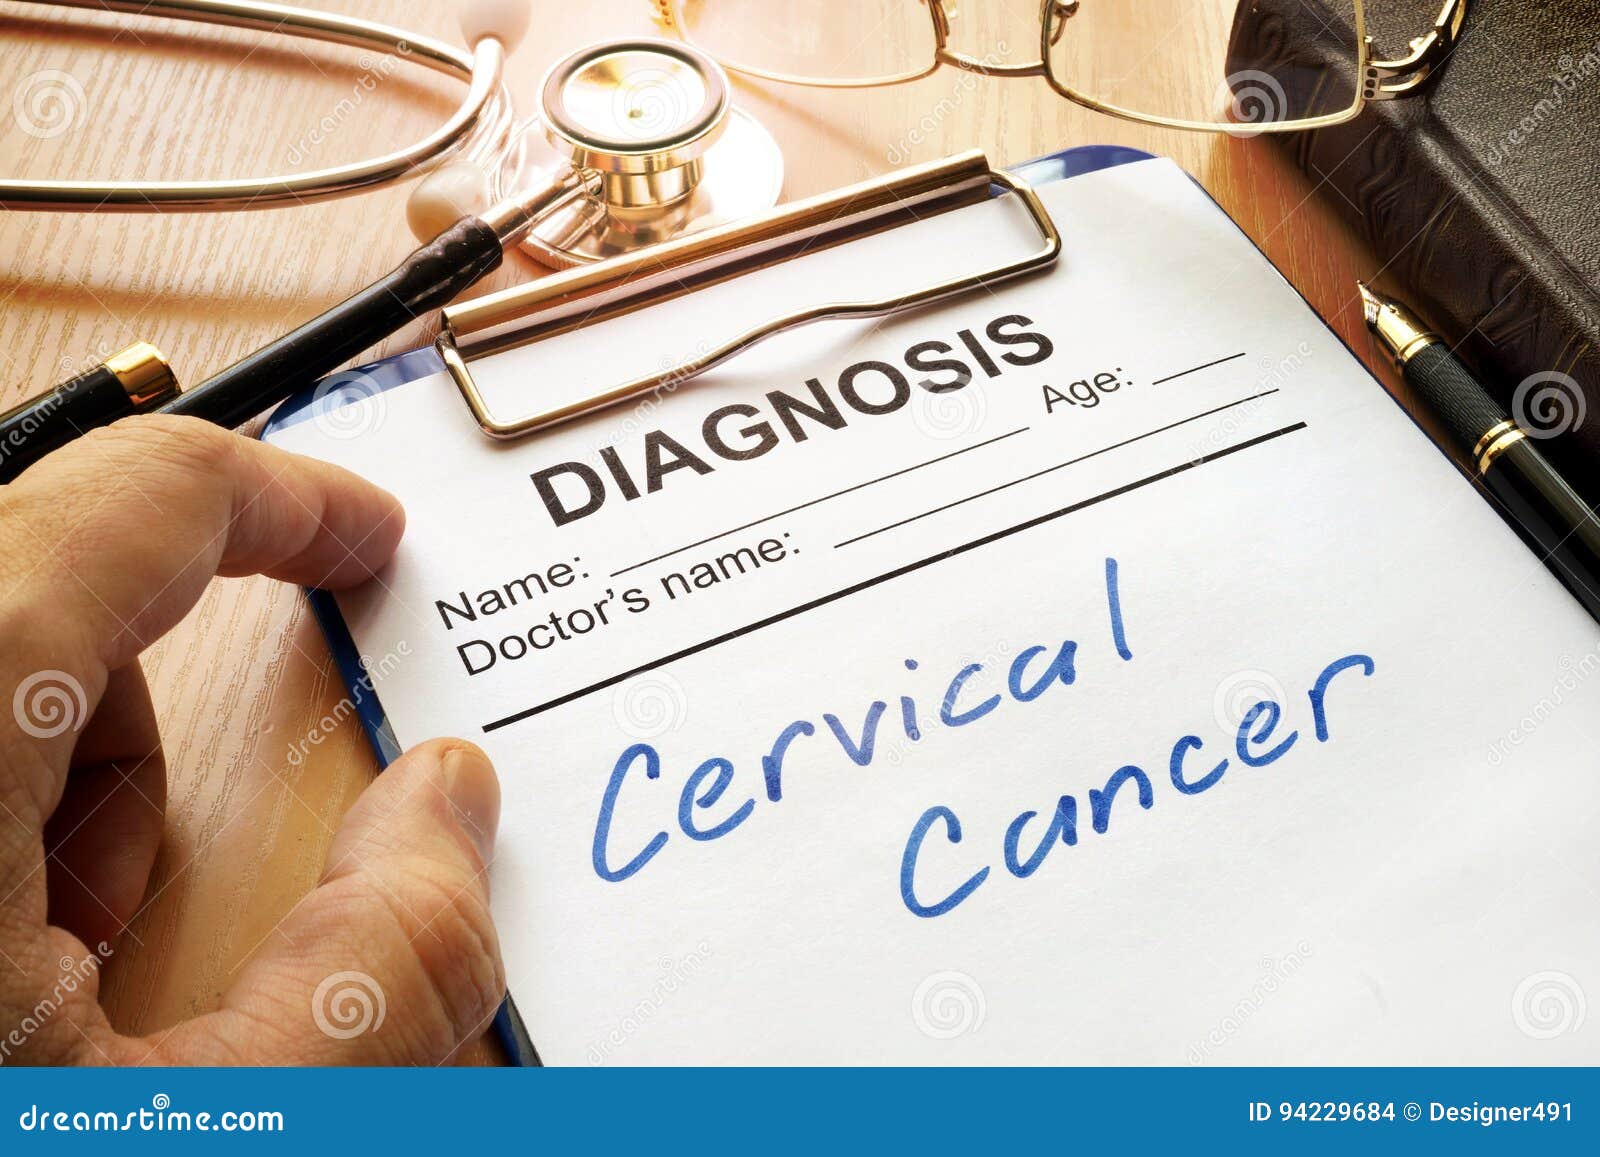 cervical cancer.